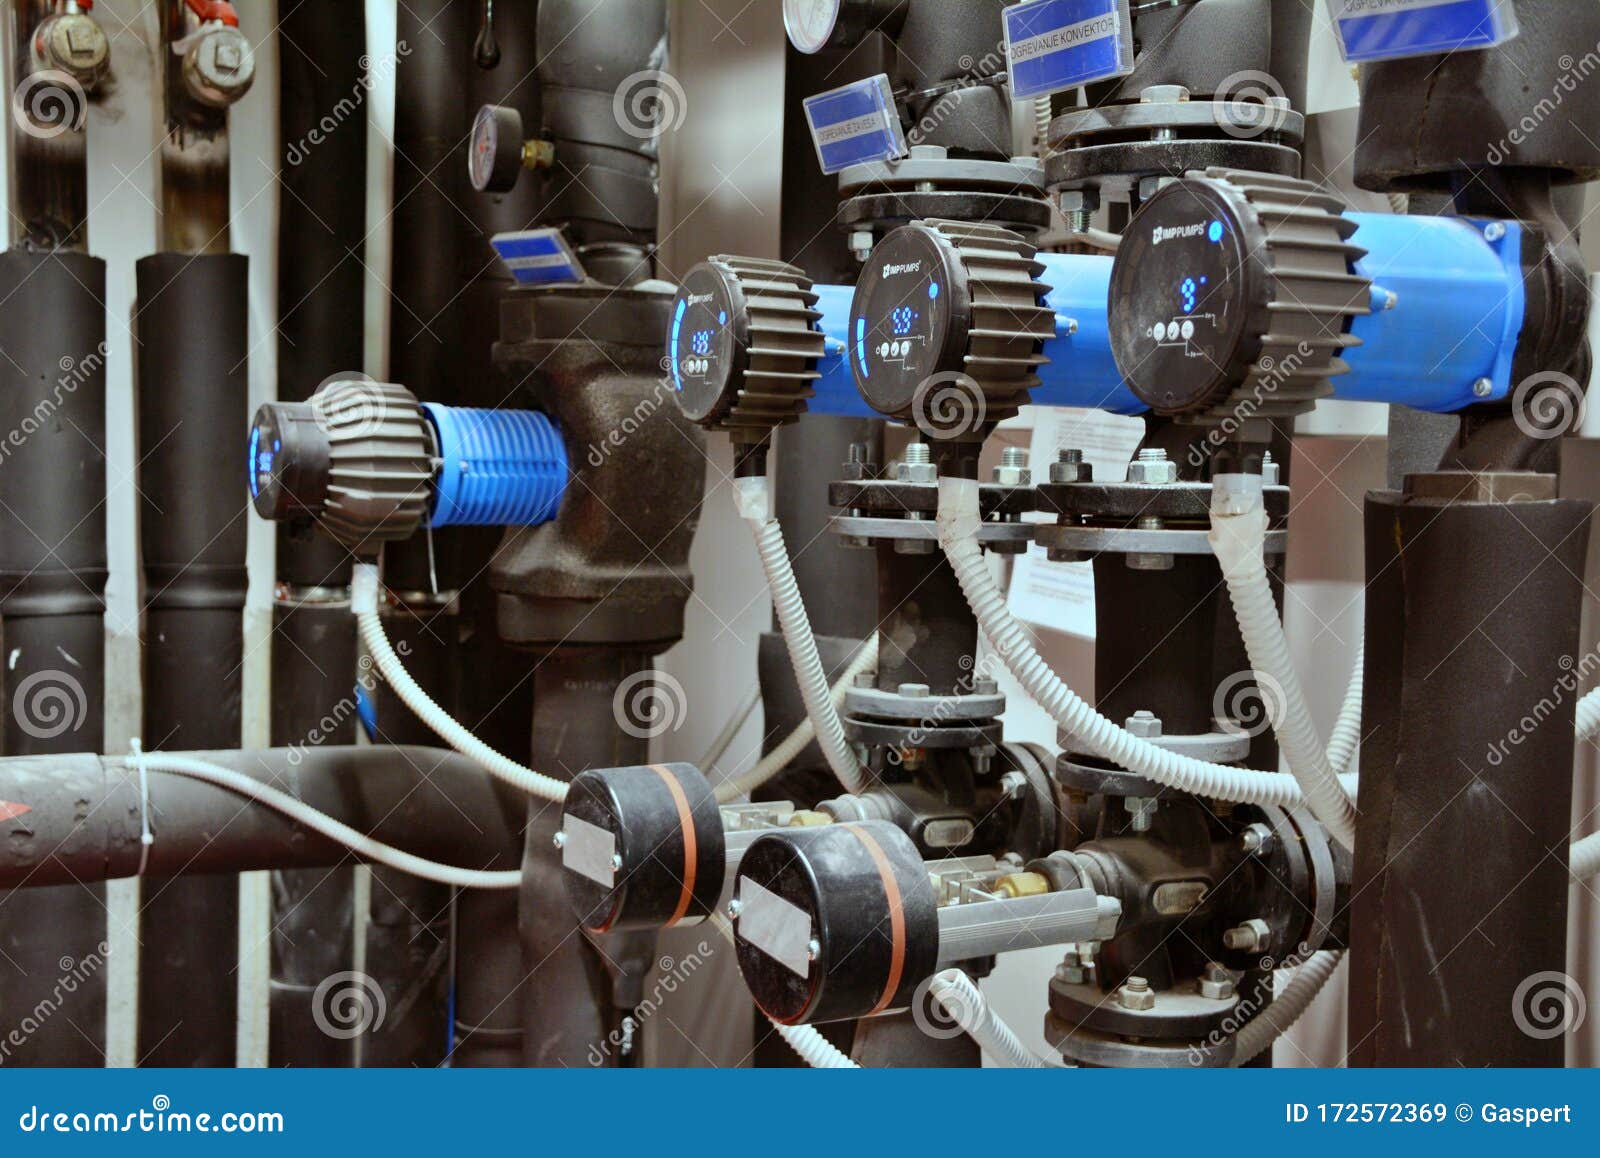 water sistem pumps manometer filters cleaners plumber